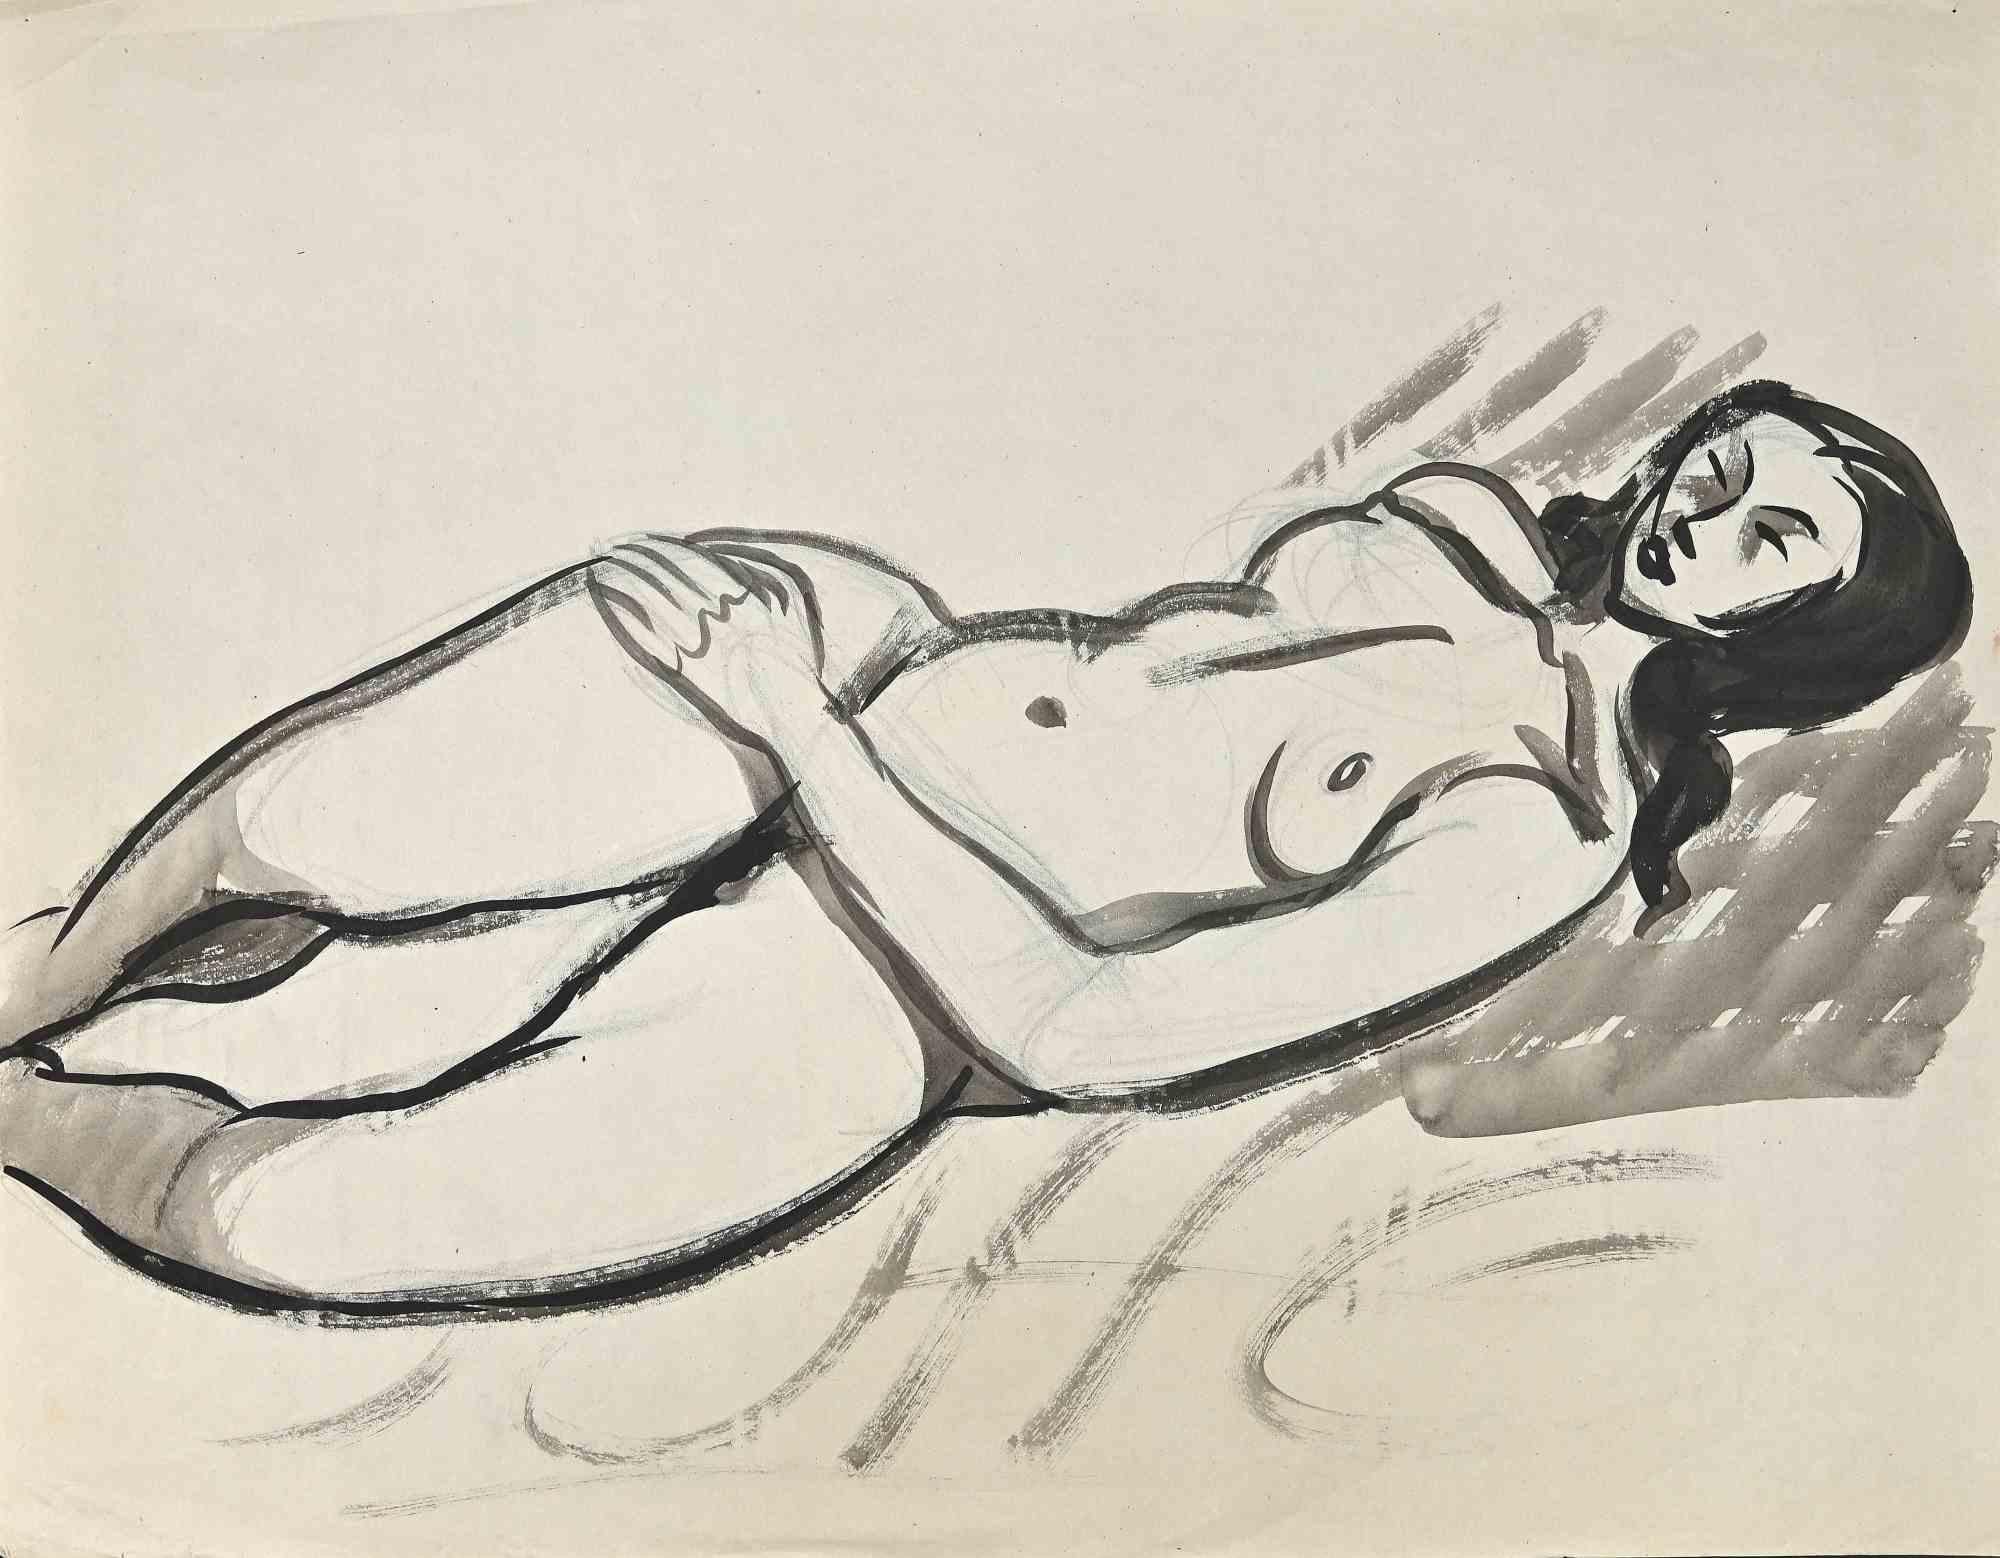 Nude est un dessin original à l'aquarelle, réalisé au milieu du 20ème siècle par  Jean Delpech   (1916-1988). 

Bonnes conditions.

Jean-Raymond Delpech (1988-1916) est un peintre, graveur et illustrateur français, qui est surtout influencé par le